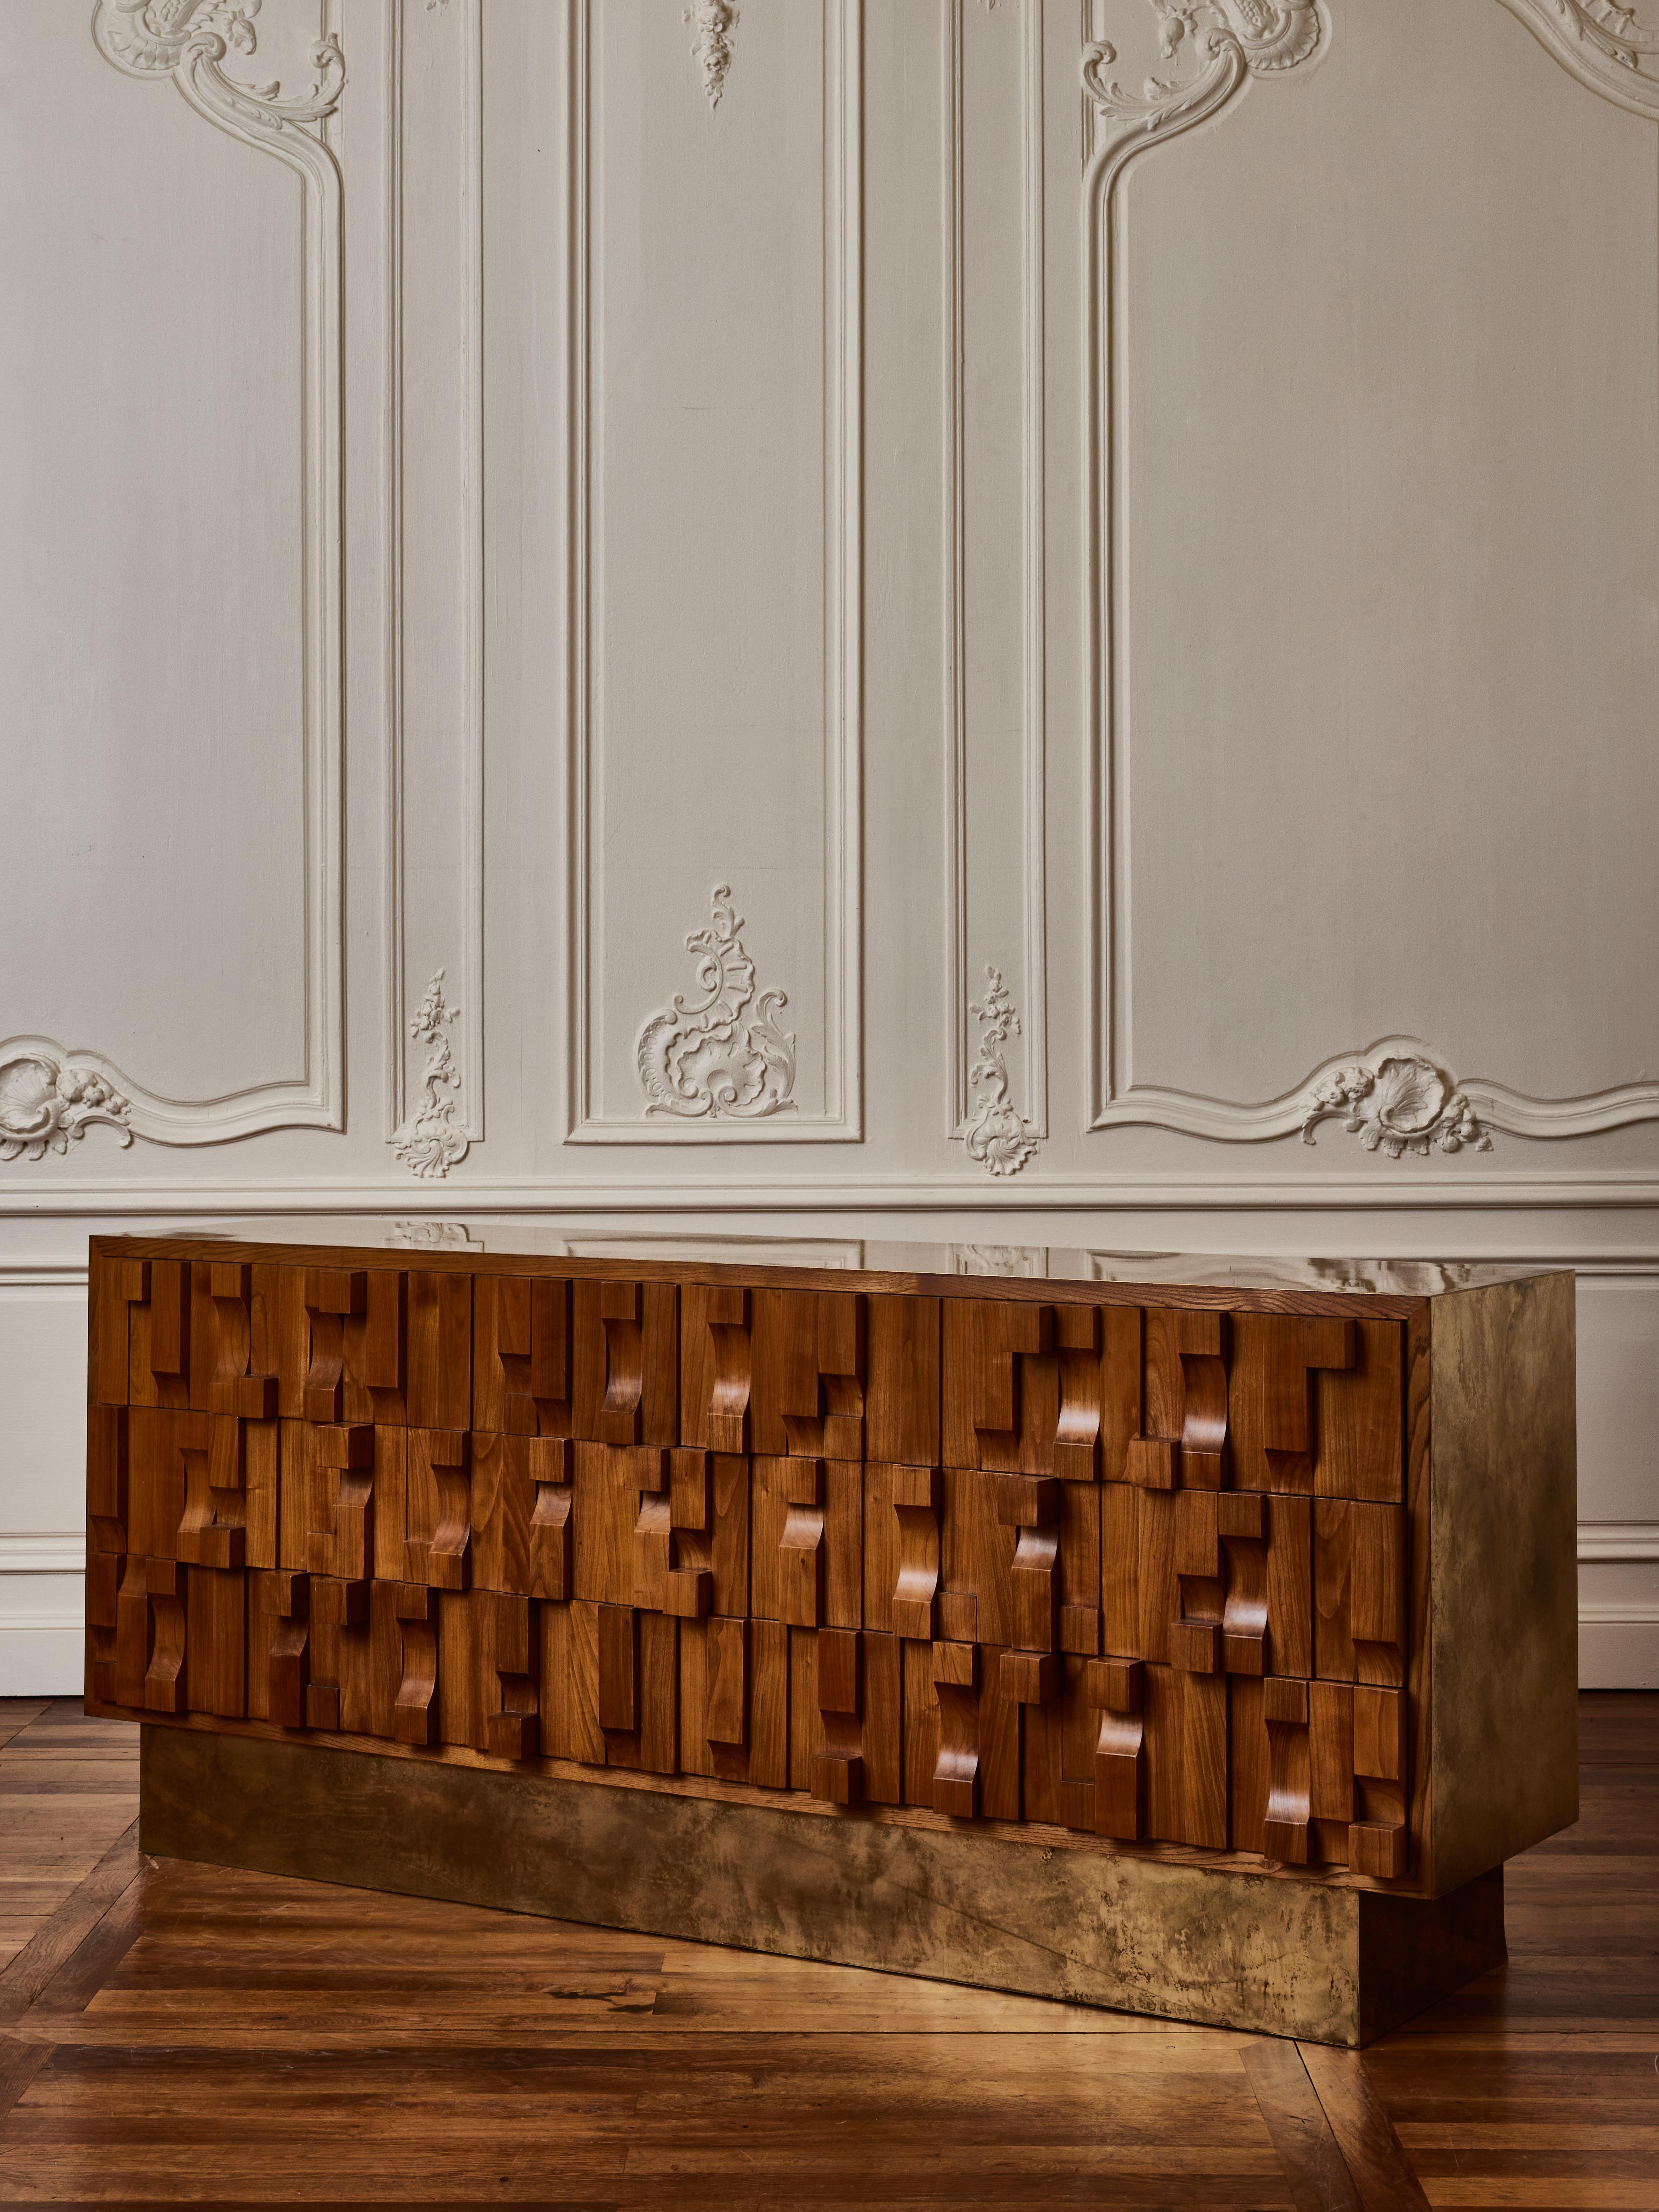 Kommode aus geschnitztem Holz mit Holz und Platte aus säurepatiniertem Messing.
Gestaltung durch das Studio Glustin.